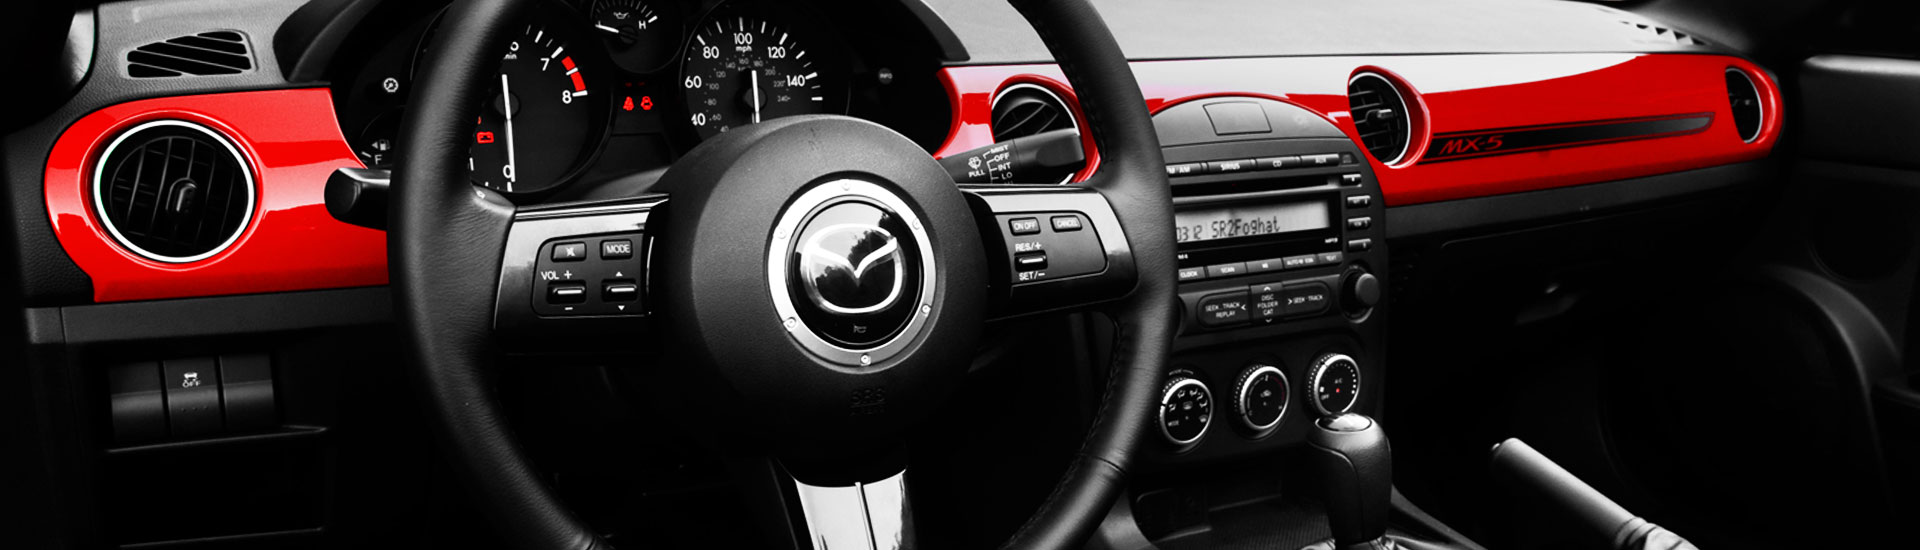 Red dash kit inside Mazda